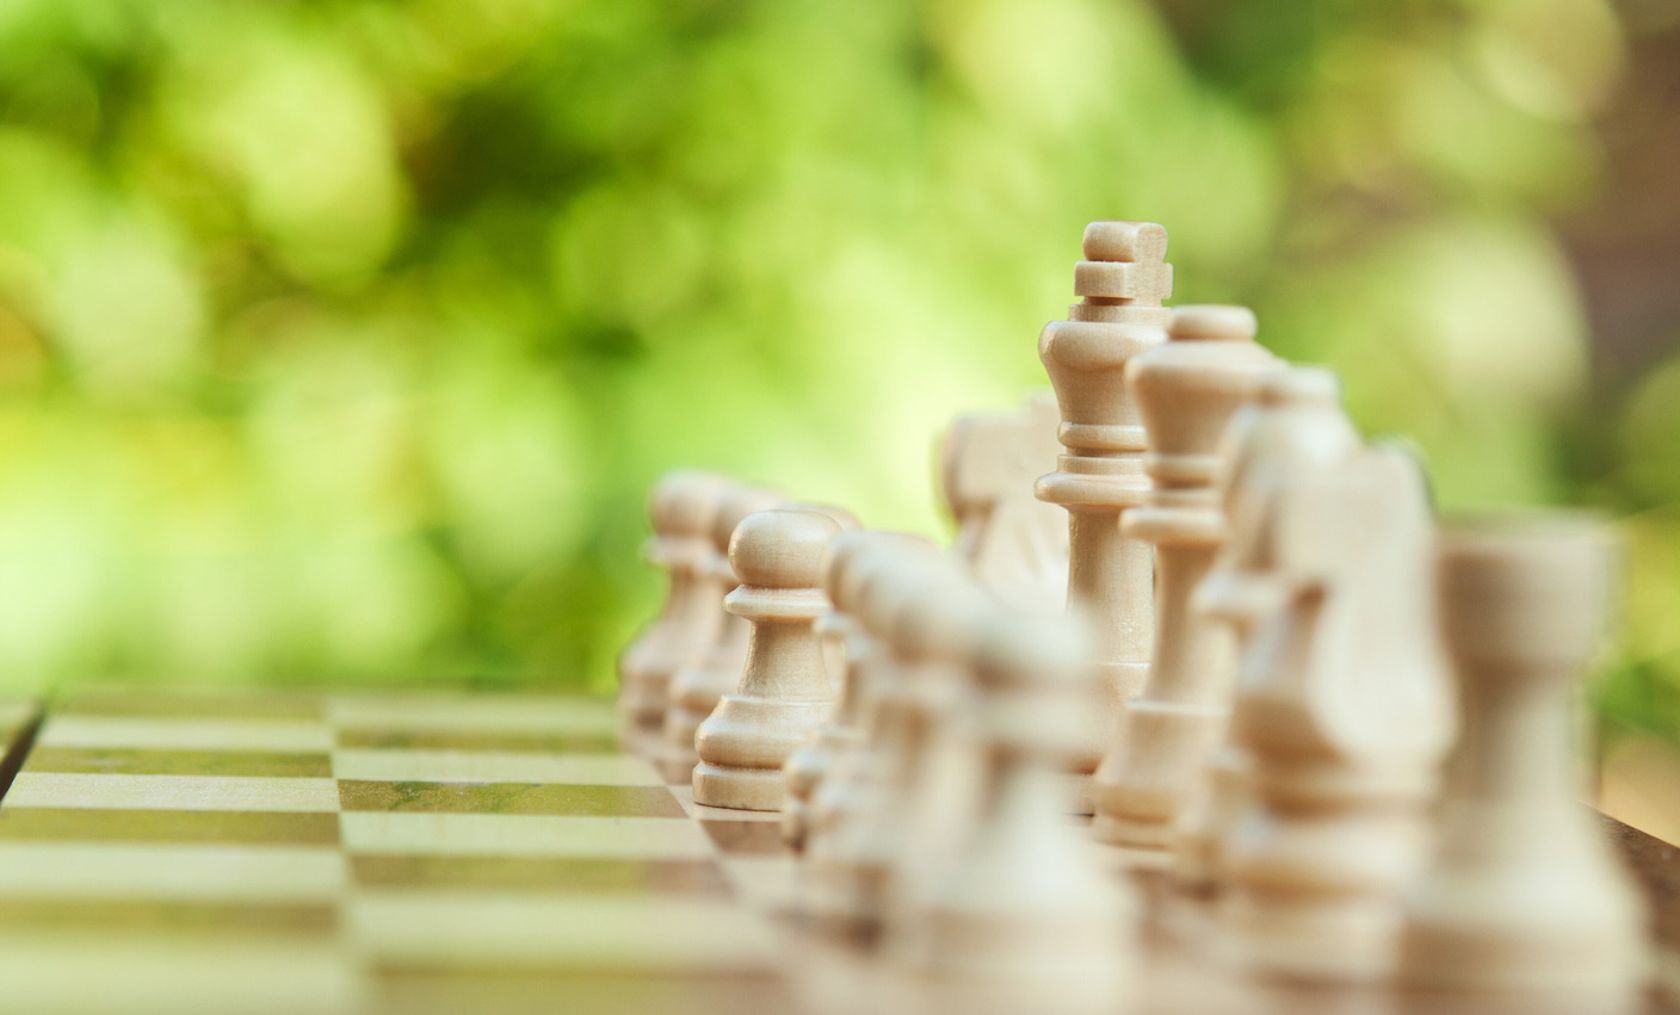 BG4SDGs Talks: The chessboard of sustainability explained by Francesco Morace